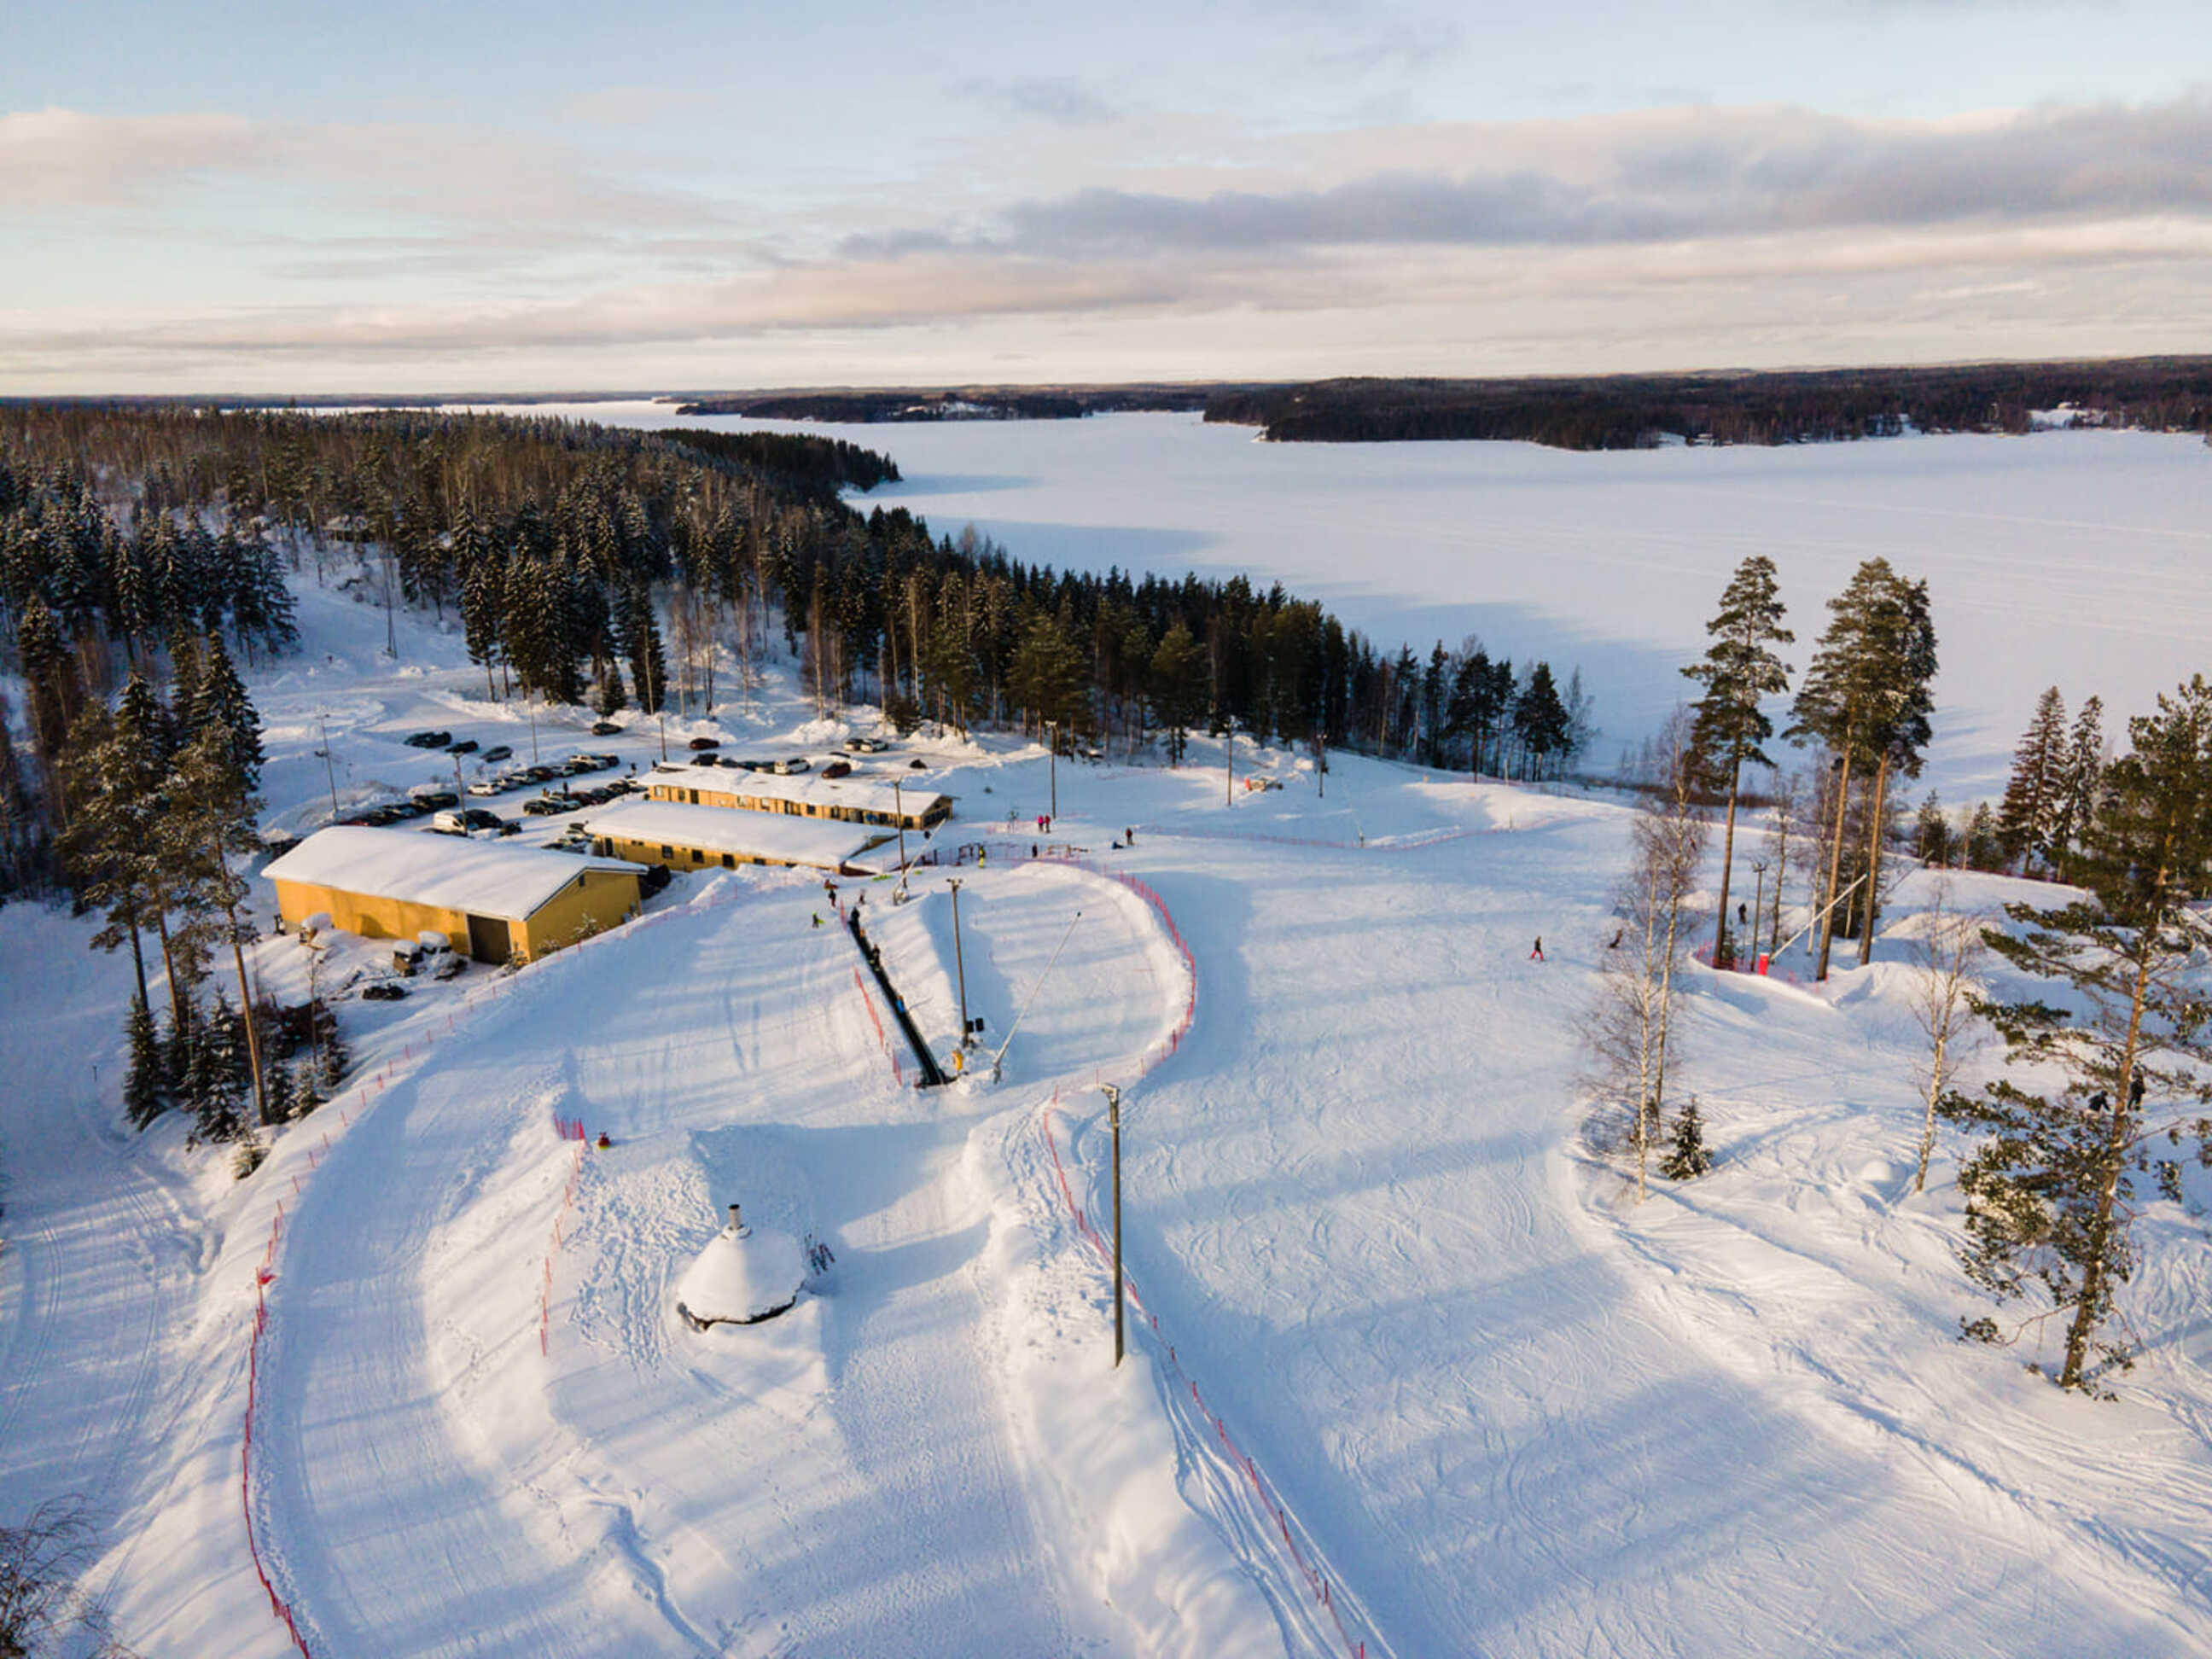 <p>В Финляндии лыжный отдых - не просто спорт, это-стиль жизни.</p><p>В Финляндии насчитывается более 100 курортов для зимних видов спорта. Самые популярные в Финляндии курорты - где можно покататься на горных лыжах, сноуборде, беговых лыжах, собачьей упряжке, снегоходах- да на чем угодно!&nbsp;</p><p>Более половины курортов расположились в южной части страны. Холмистая местность, относительно мягкий, но снежный климат, близость к столице, потрясающая природа сделали этот регион действительно привлекательным.</p><p>Особняком в Южной Финляндии стоит горнолыжный курорт Tahko - сюда приезжают не только местные жители , но и гости из других стран - Швеции, Германии, Эстонии, Латвии , Литвы, Великобритании и др. Горнолыжный курорт Тахко отличает значительный перепад высот - до 200 метров и почти самыми длинными в Суоми трассами - до 1200 метров. </p><p>Посетителям горнолыжных склонов Тахко на выбор предлагаются 23 трассы различной сложности и протяженности( 8 освещенных):</p><ul><li>склоны высокого уровня сложности, чёрные :3</li><li>склоны среднего уровня сложности, красные:8</li><li>склоны низкого уровня сложности, синие:9</li><li>склоны для начинающих, зеленые:8</li><li>детский склон:1</li></ul><p>К услугам отдыхающих 15 подъемников: на 2 и 4 кресла, 11 бугельных, 2 wonder-carpet (безопасная бегущая дорожка для детей).</p><p>Для поклонников беговых лыж действуют трассы протяженностью 64 км, из них с освещением- 16</p><p>Сноуборд-парк: суперпайп и стрит. Проводятся соревнования.</p><p>Новички могут пройти обучение в лыжной школе под руководством профессиональных англоговорящих инструкторов. Работают 2 пункта проката инвентаря. Один из сервисов вы можете найти на сайте https://hillskirent.fi/en/tahko/rent/ . На этом же сайте вы найдете прокат снегоходов и электробайков. Весной, летом и осенью работает Тахко Байк-парк</p><p>Насыщенный мероприятиями апре-ски Тахко является  <span style="background-color: rgb(247, 247, 247); color: rgb(44, 47, 52);">частью необыкновенной атмосферы </span>курорта.</p><p>В Тахко любой желающий может принять участие в сафари на снегоходах, сноубайках, подледной рыбалке и других развлечениях. Летом на курорте Тахко можно заняться пешим и велосипедным туризмом, водными видами спорта, катанием на квадроцикле, поиграть в пейнтбол. Недалеко от коттеджей Tahko hills располагается гольф-поле на 18 лунок.</p><p>Круглый год открыты Тахко СПА и расположенный поблизости аквапарк Фонтанелла.</p><p>Кроме того, в Тахко находится самый длинный в Финляндии зиплайн(его длина составляет 1,4 км. и спуск начинается с вершины склонов и проходит над склонами и озером.</p><p><br></p><p><br></p>